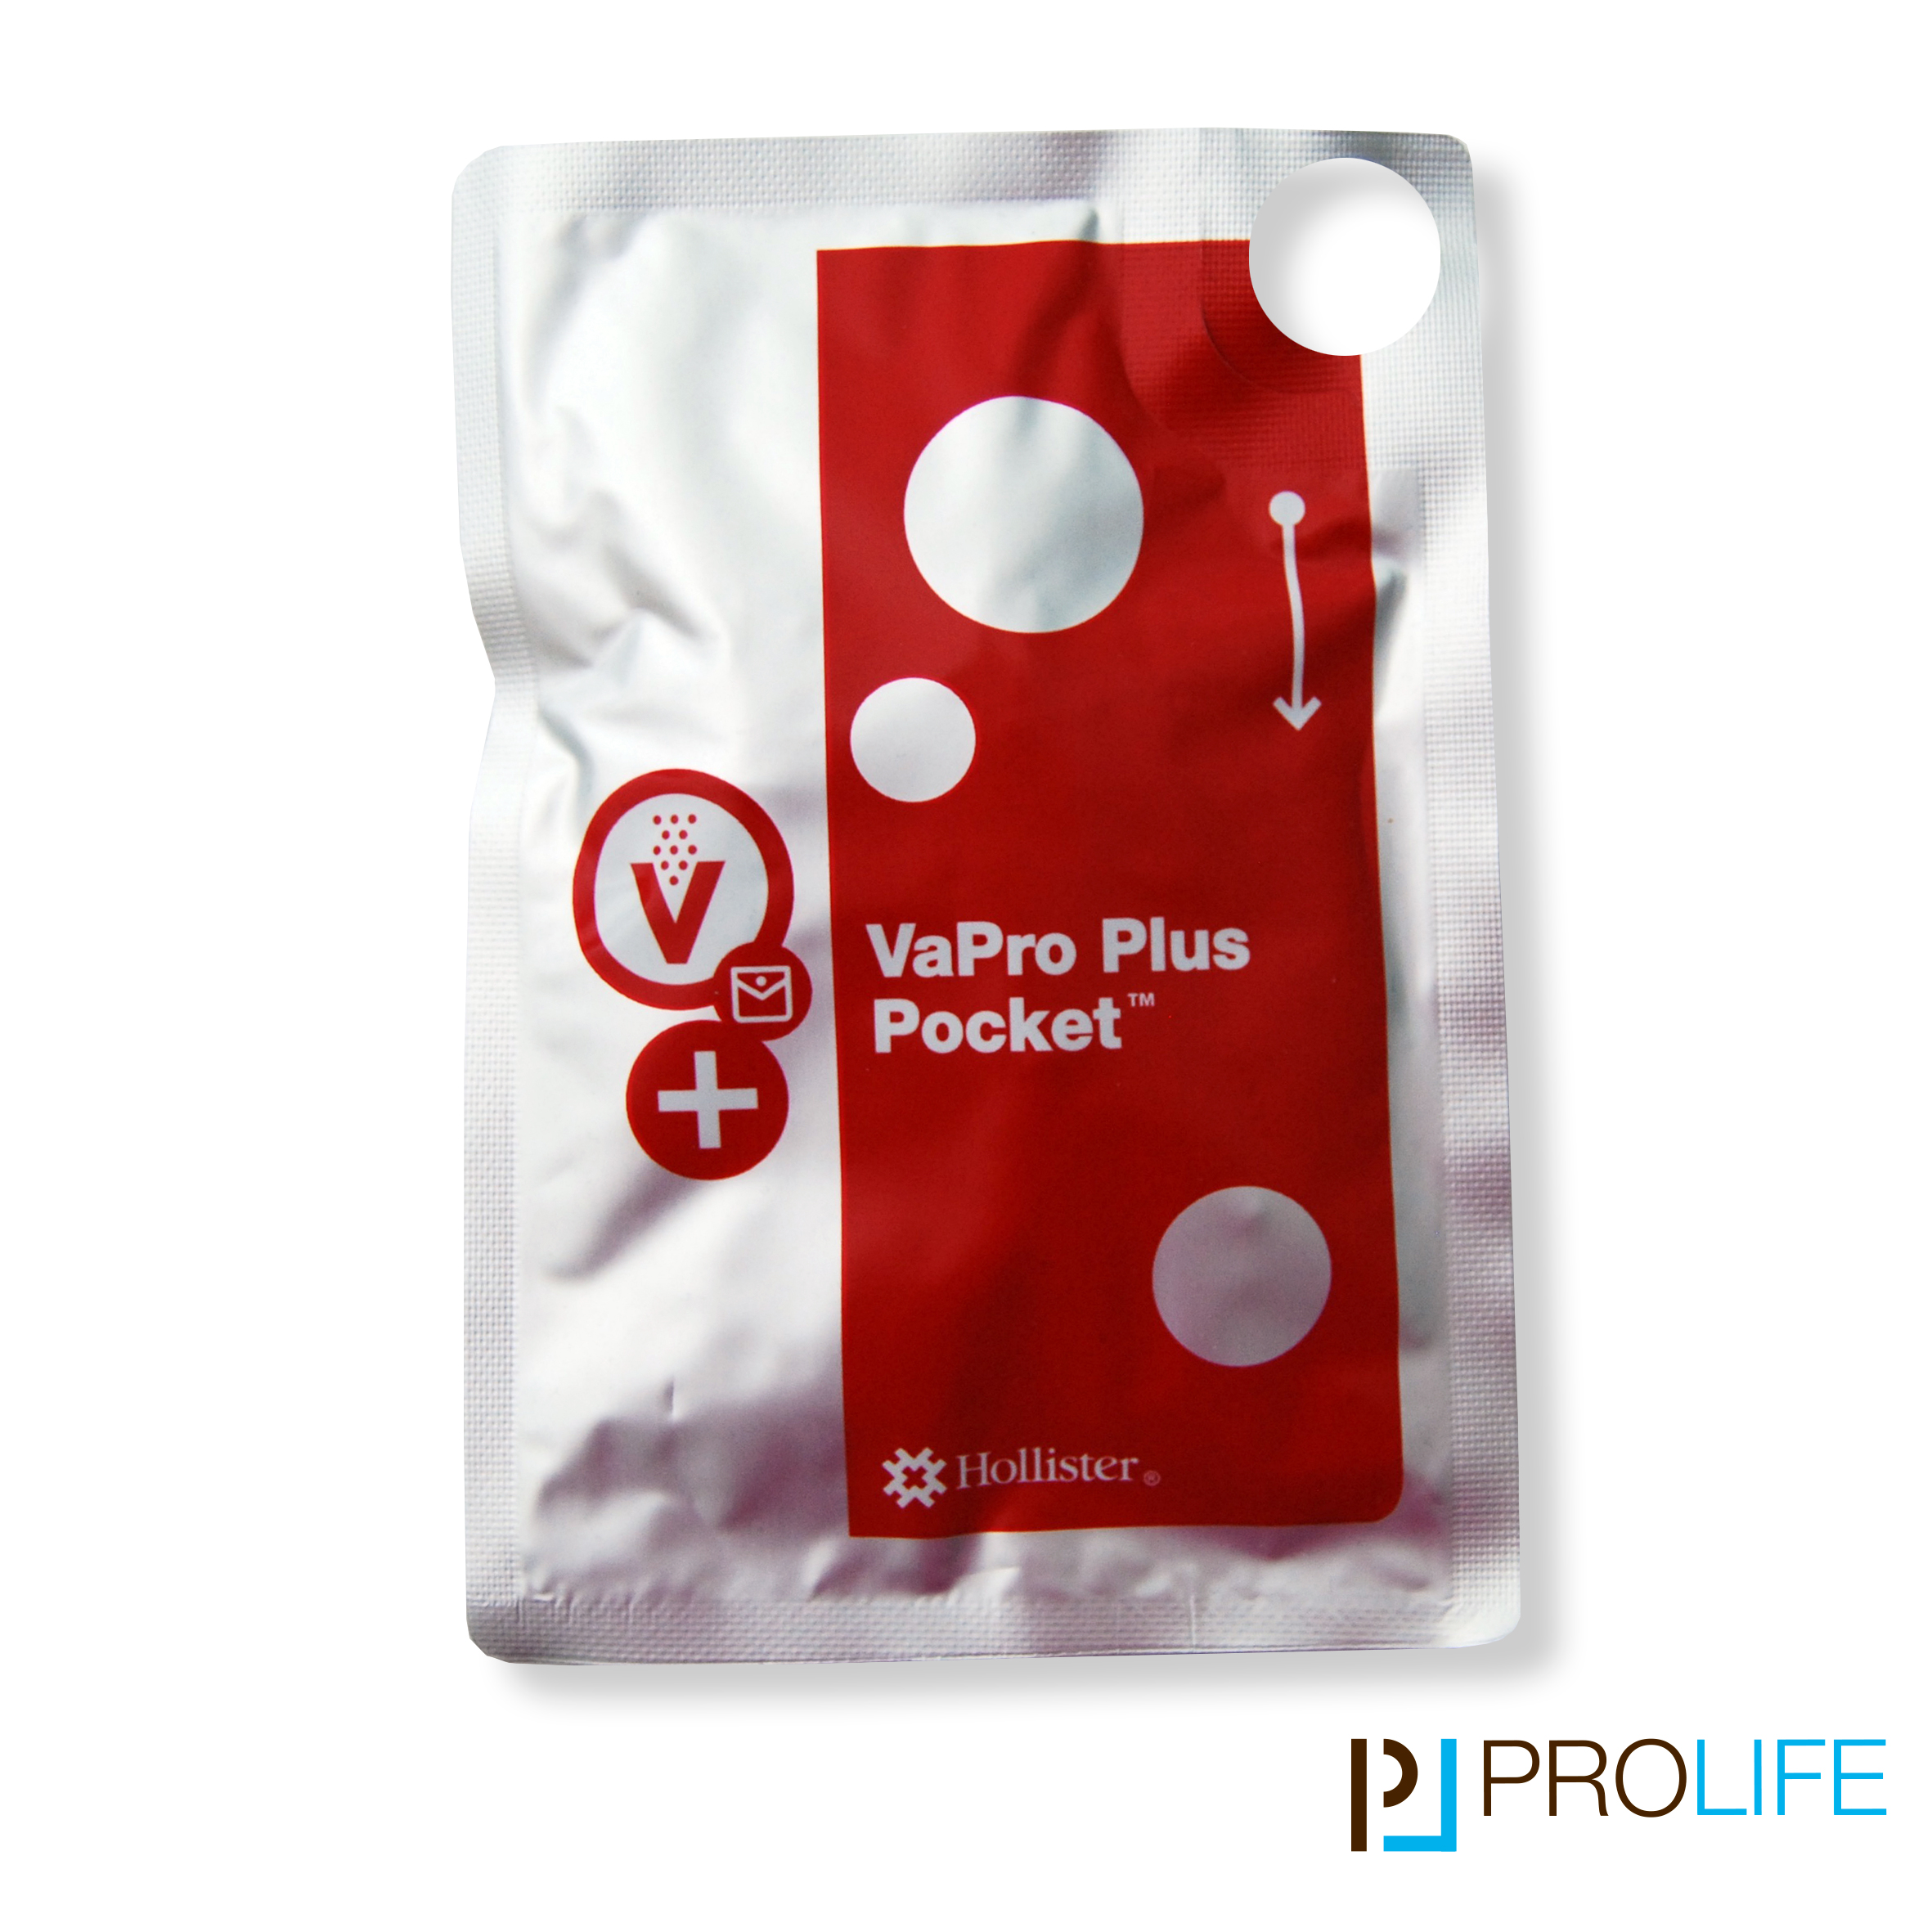 Transurethraler Einmalkatheter VaPro Plus Pocket Abb1